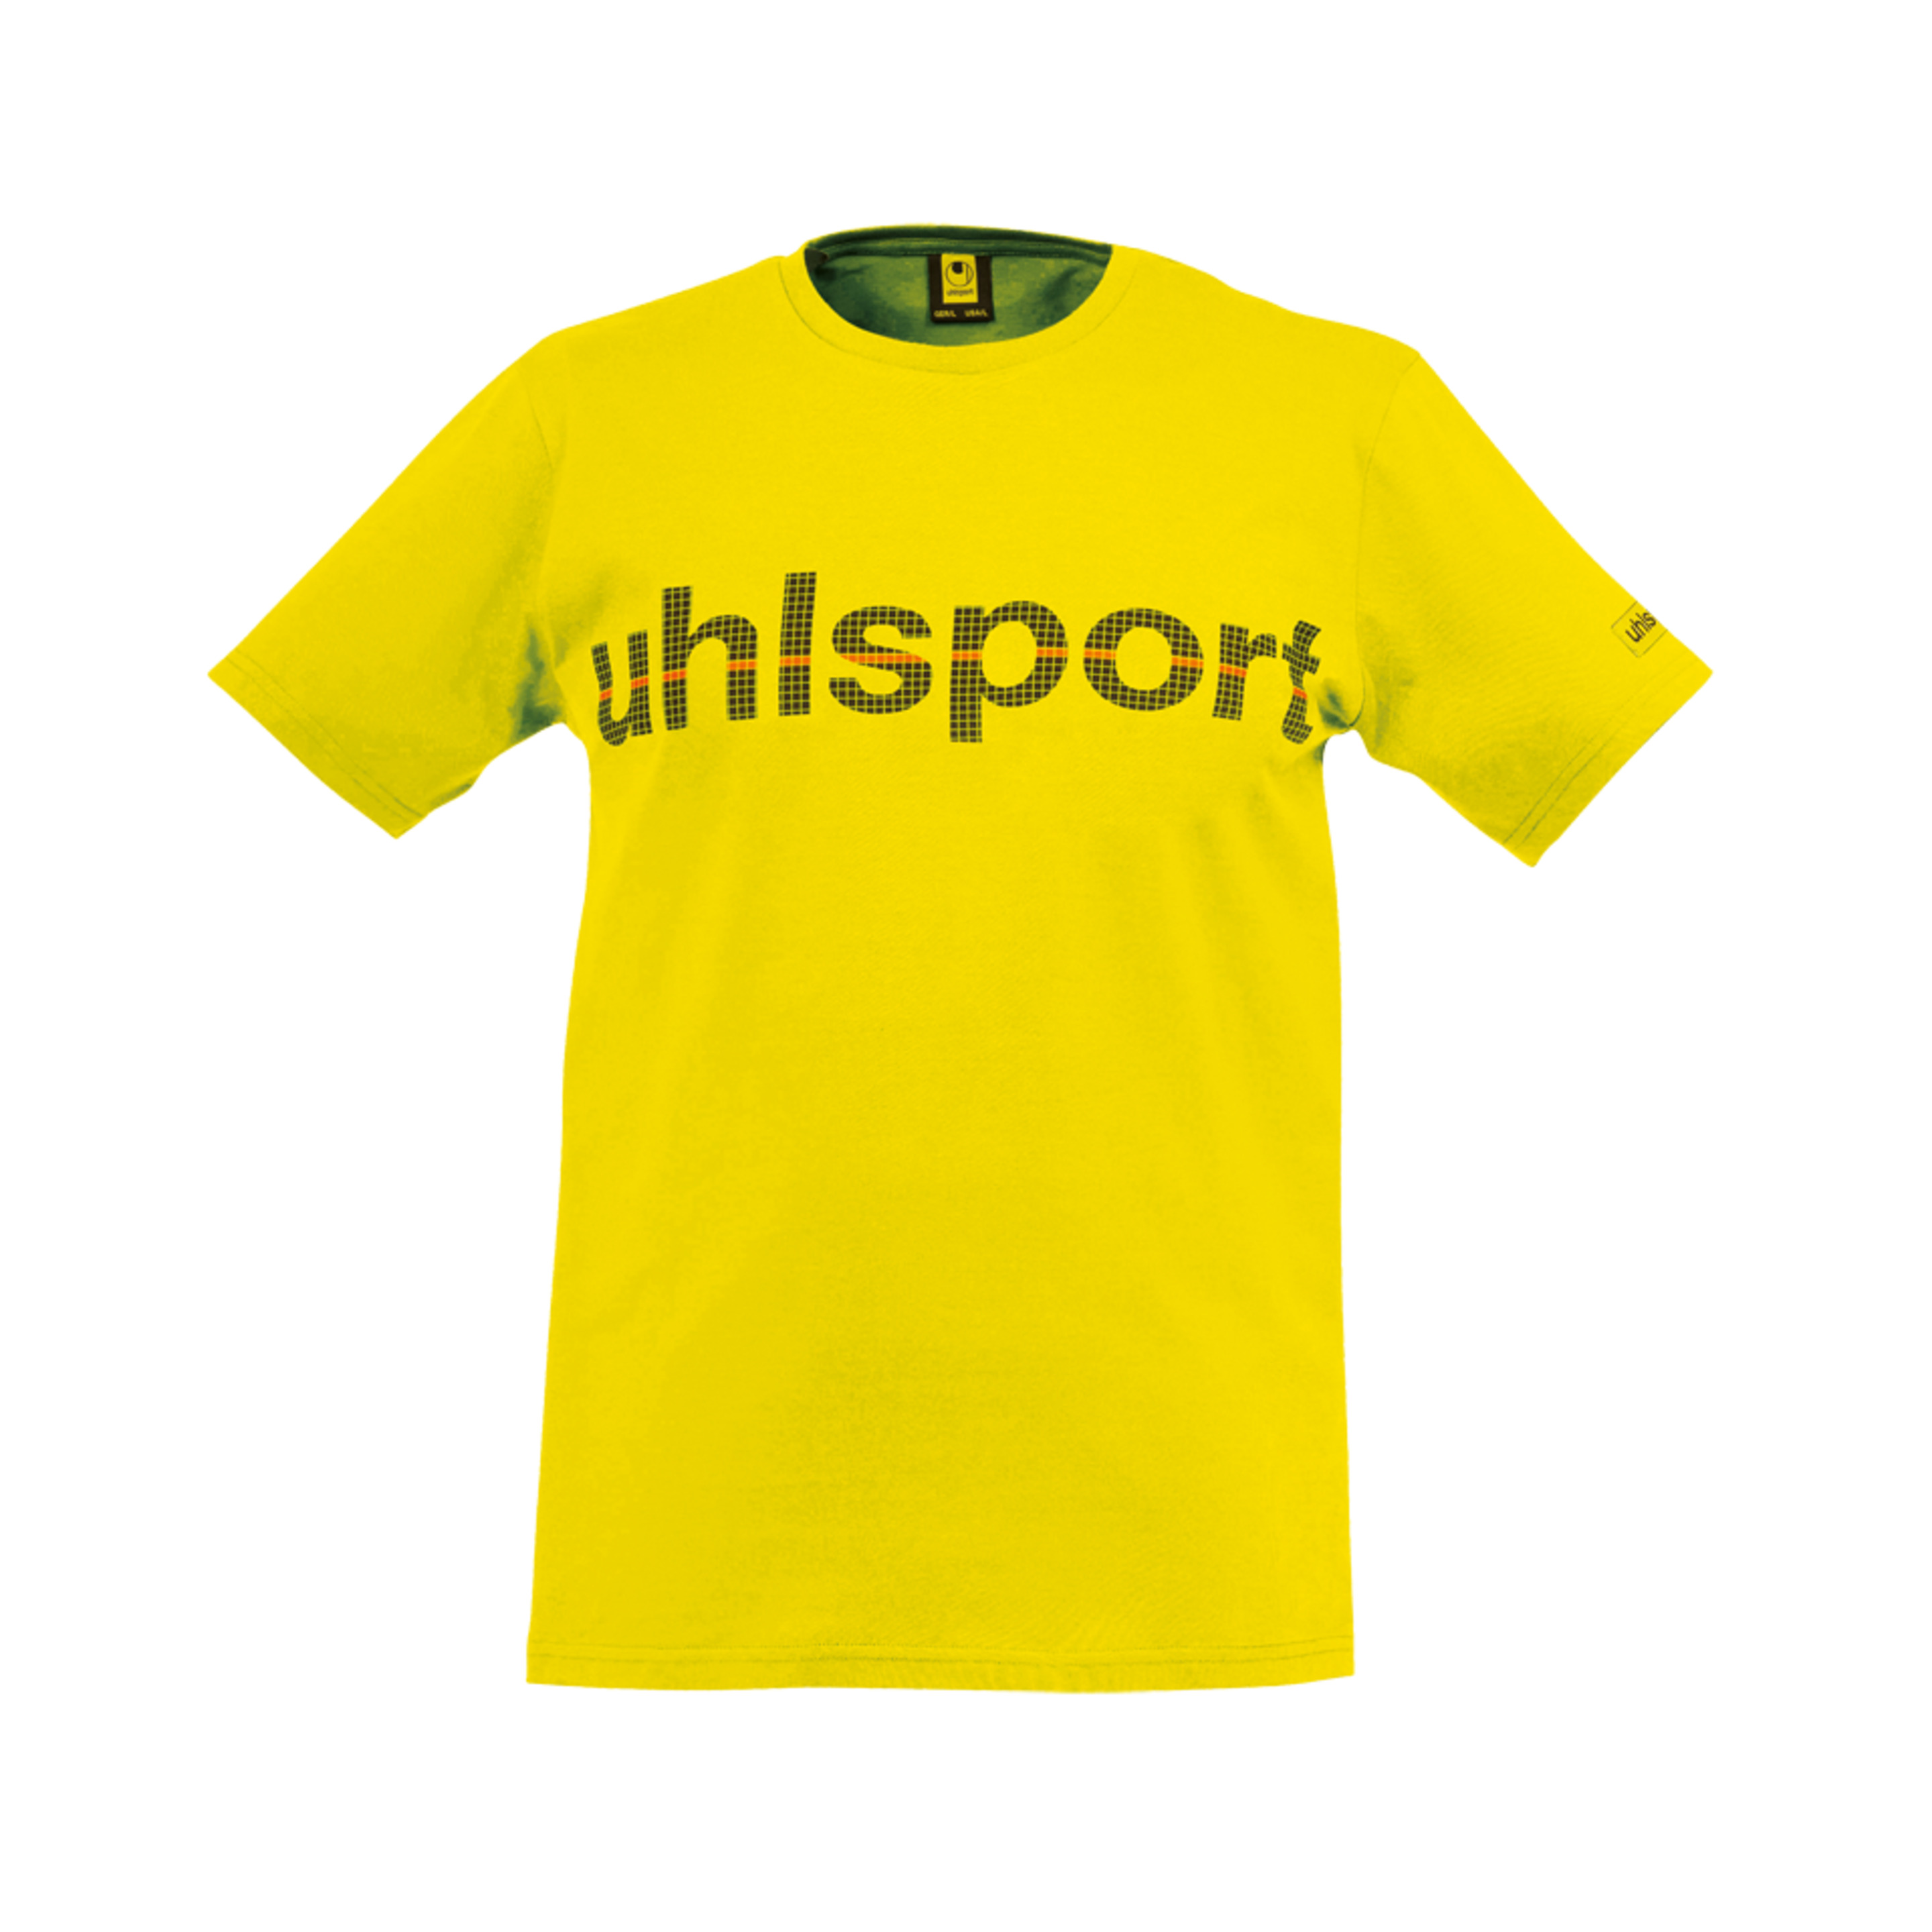 Essential Promo Camiseta Amarillo Maiz Uhlsport